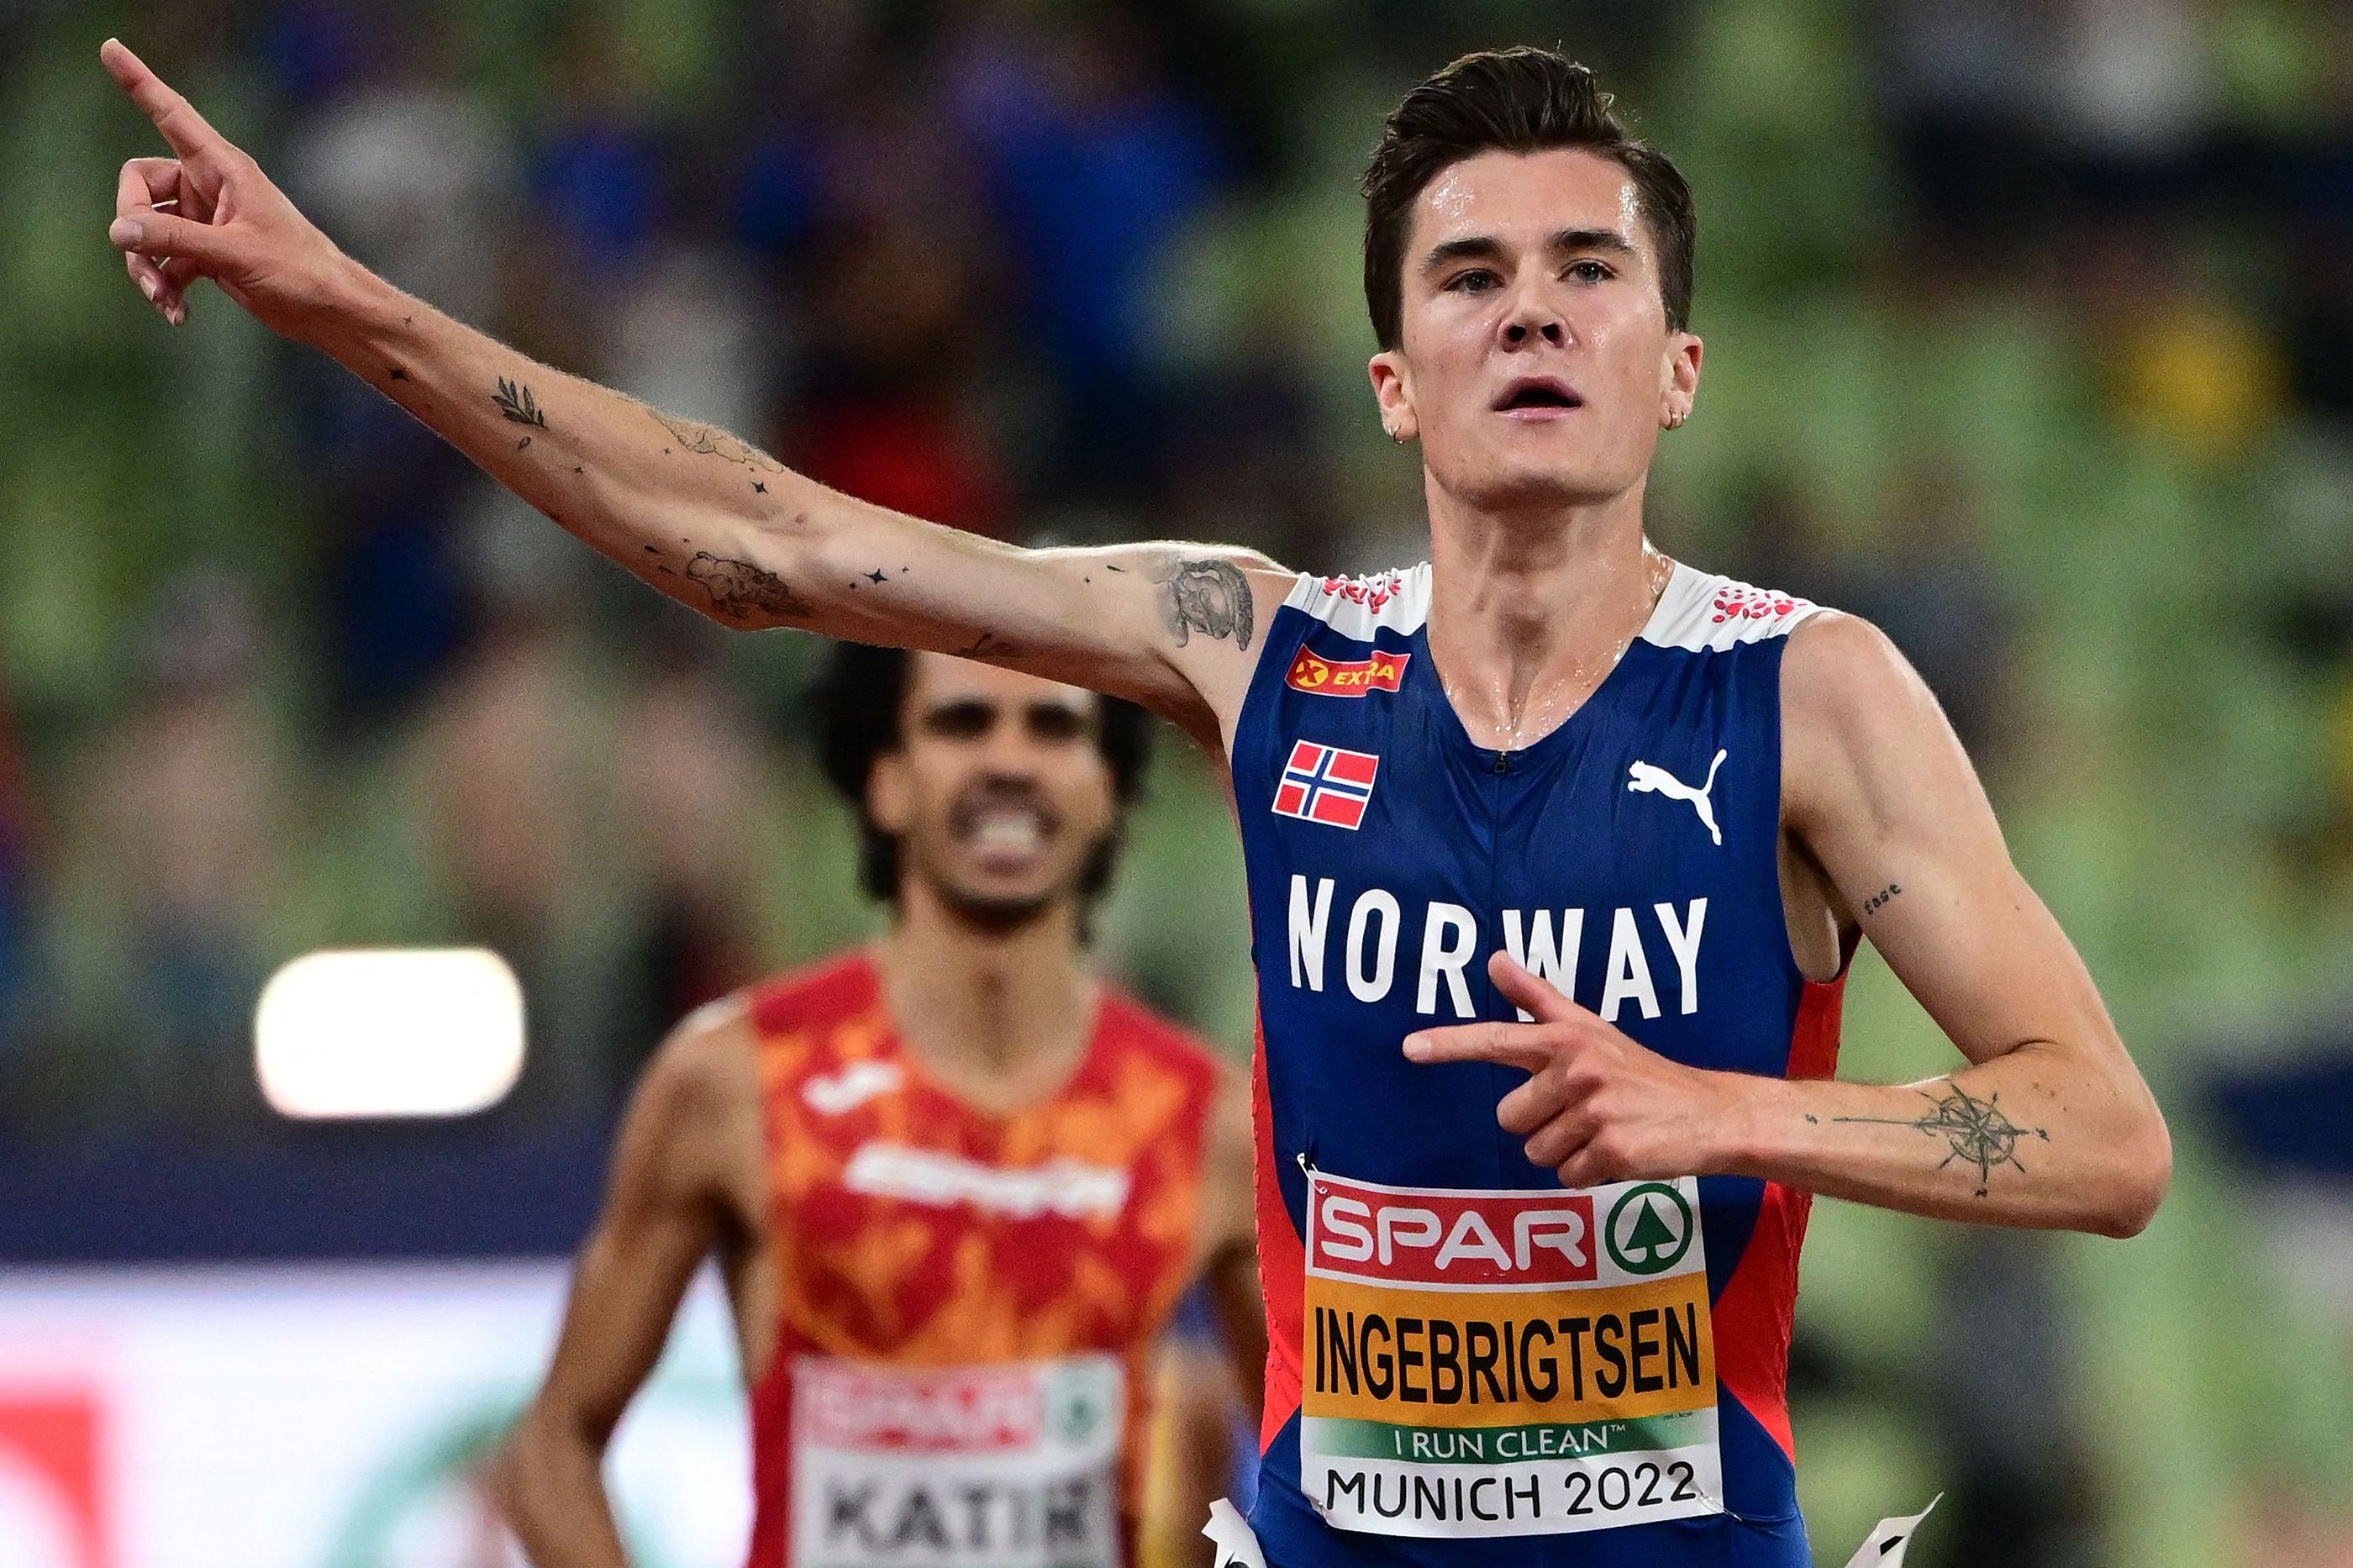 Jakob Ingebrigtsen retains his European 5000m title in Munich